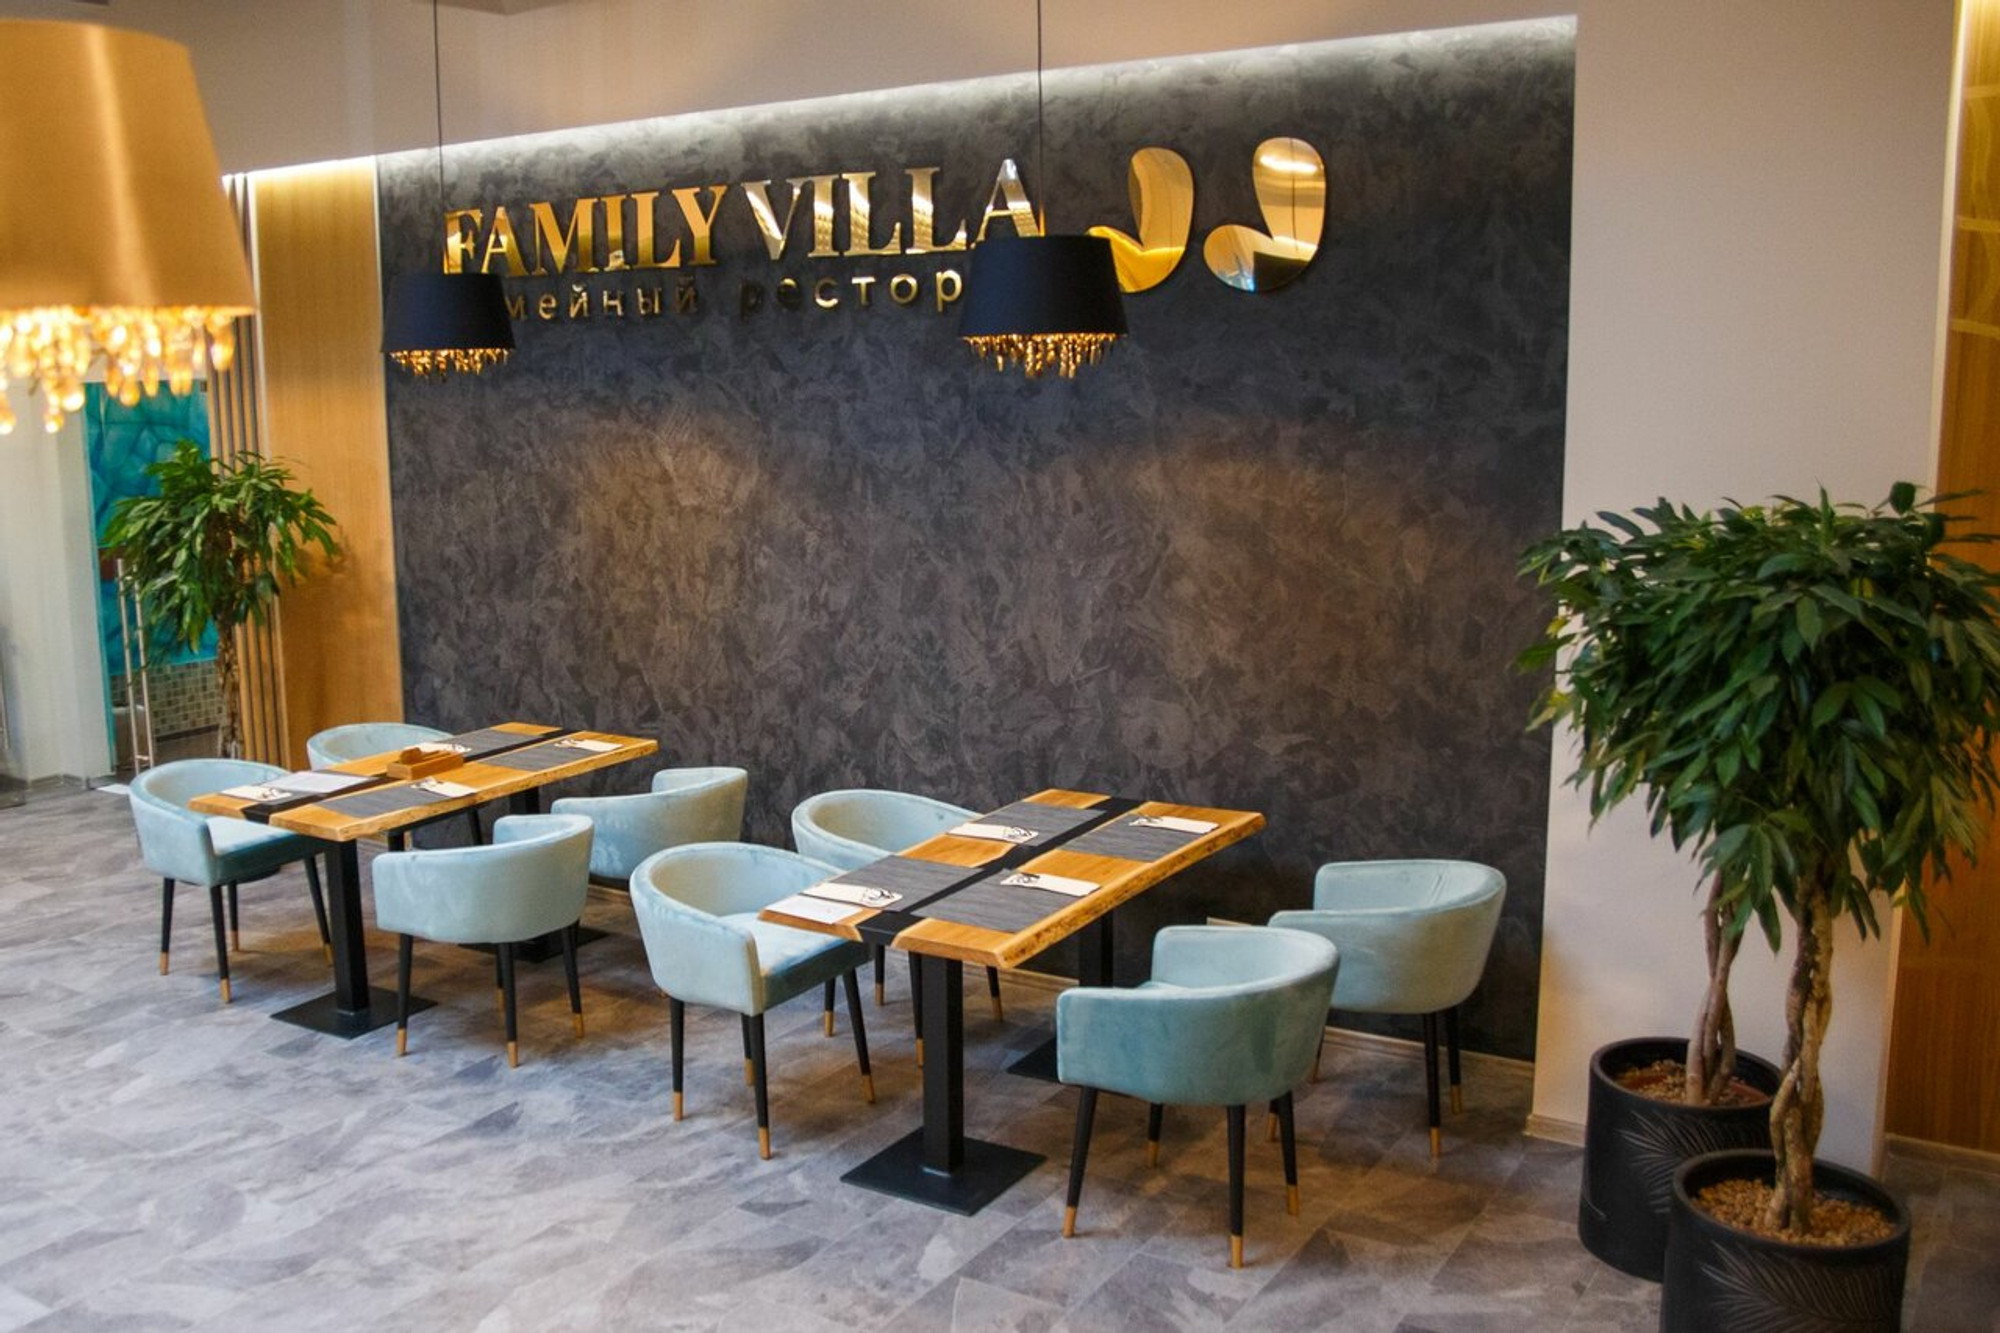 Family Villa Jj (Ресторан  с детской комнатой)